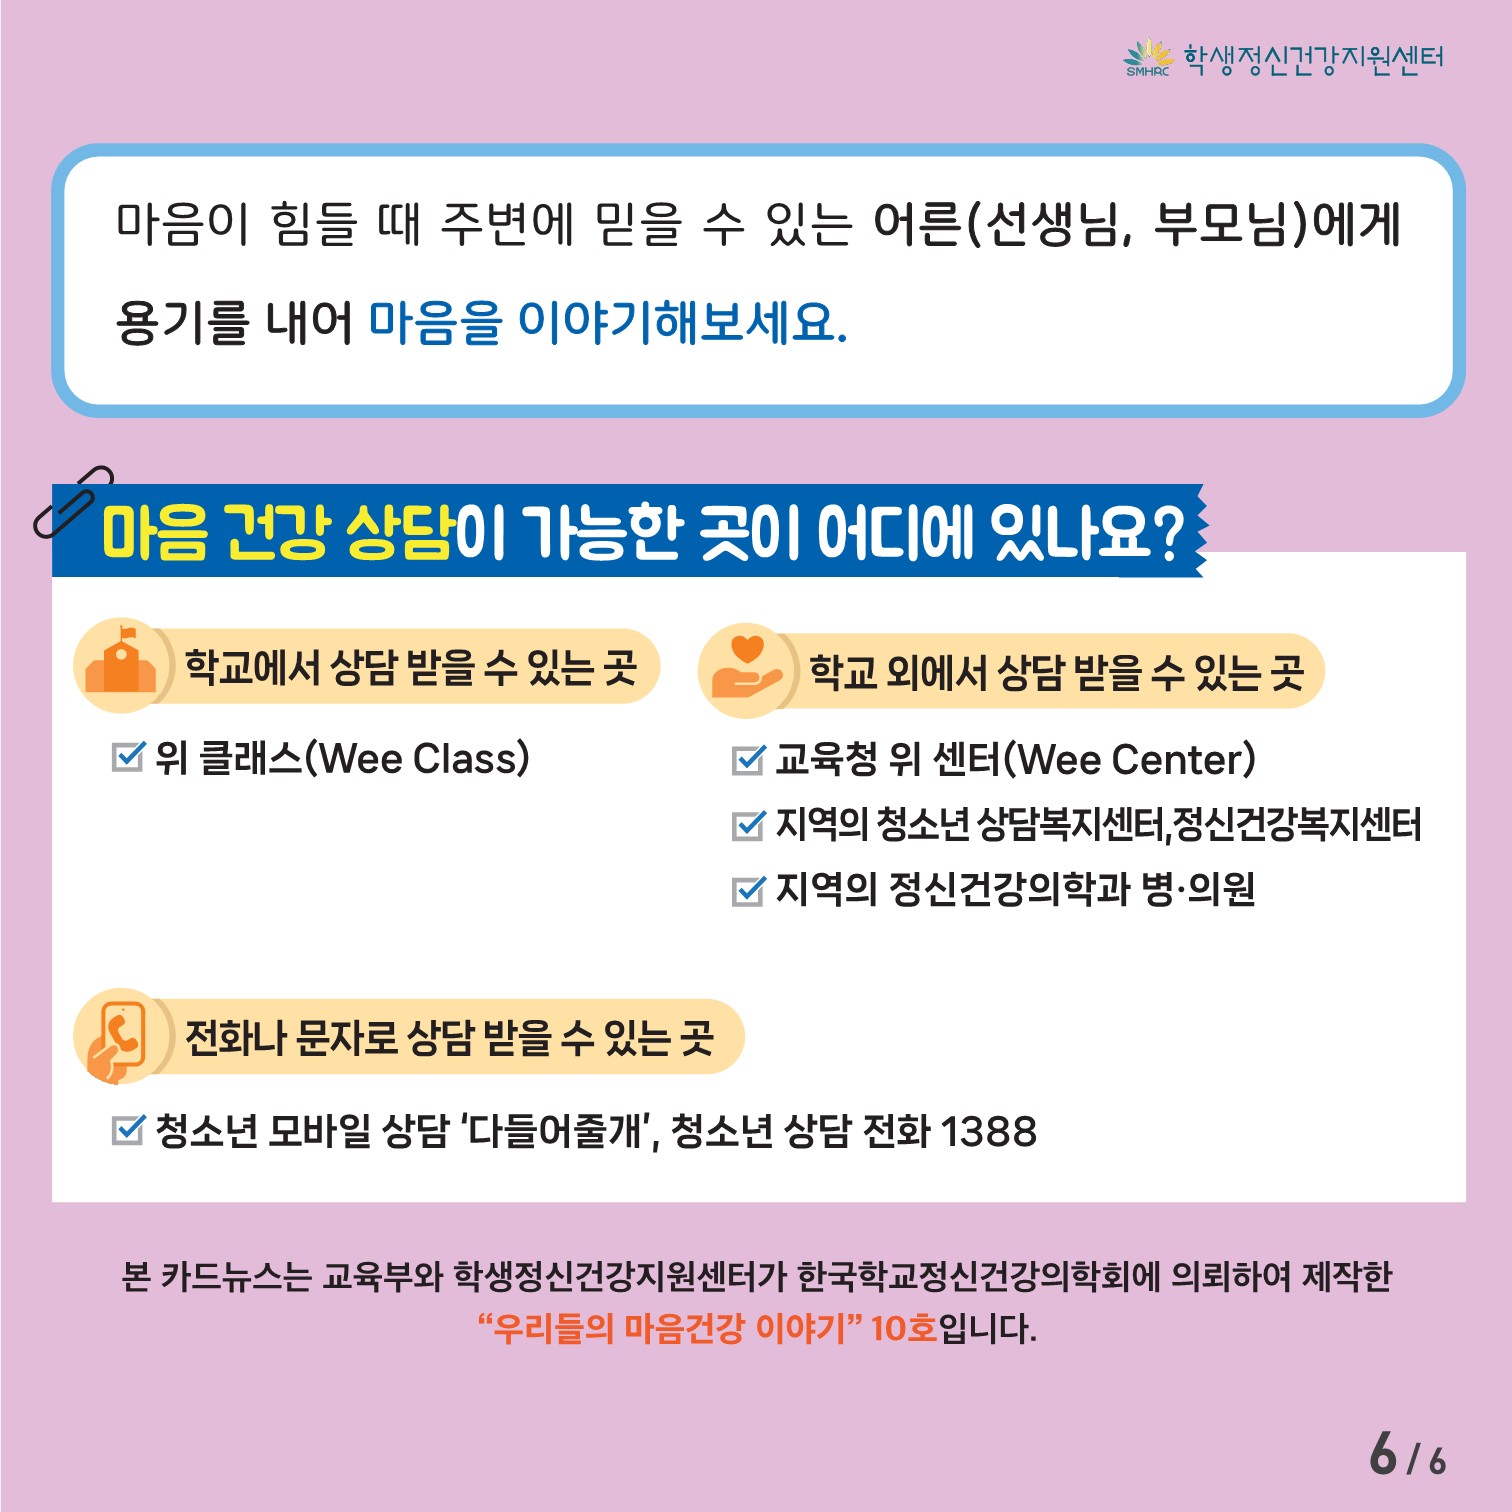 [중고등학생용] 카드뉴스 제 2023 - 10호(집중력)_6